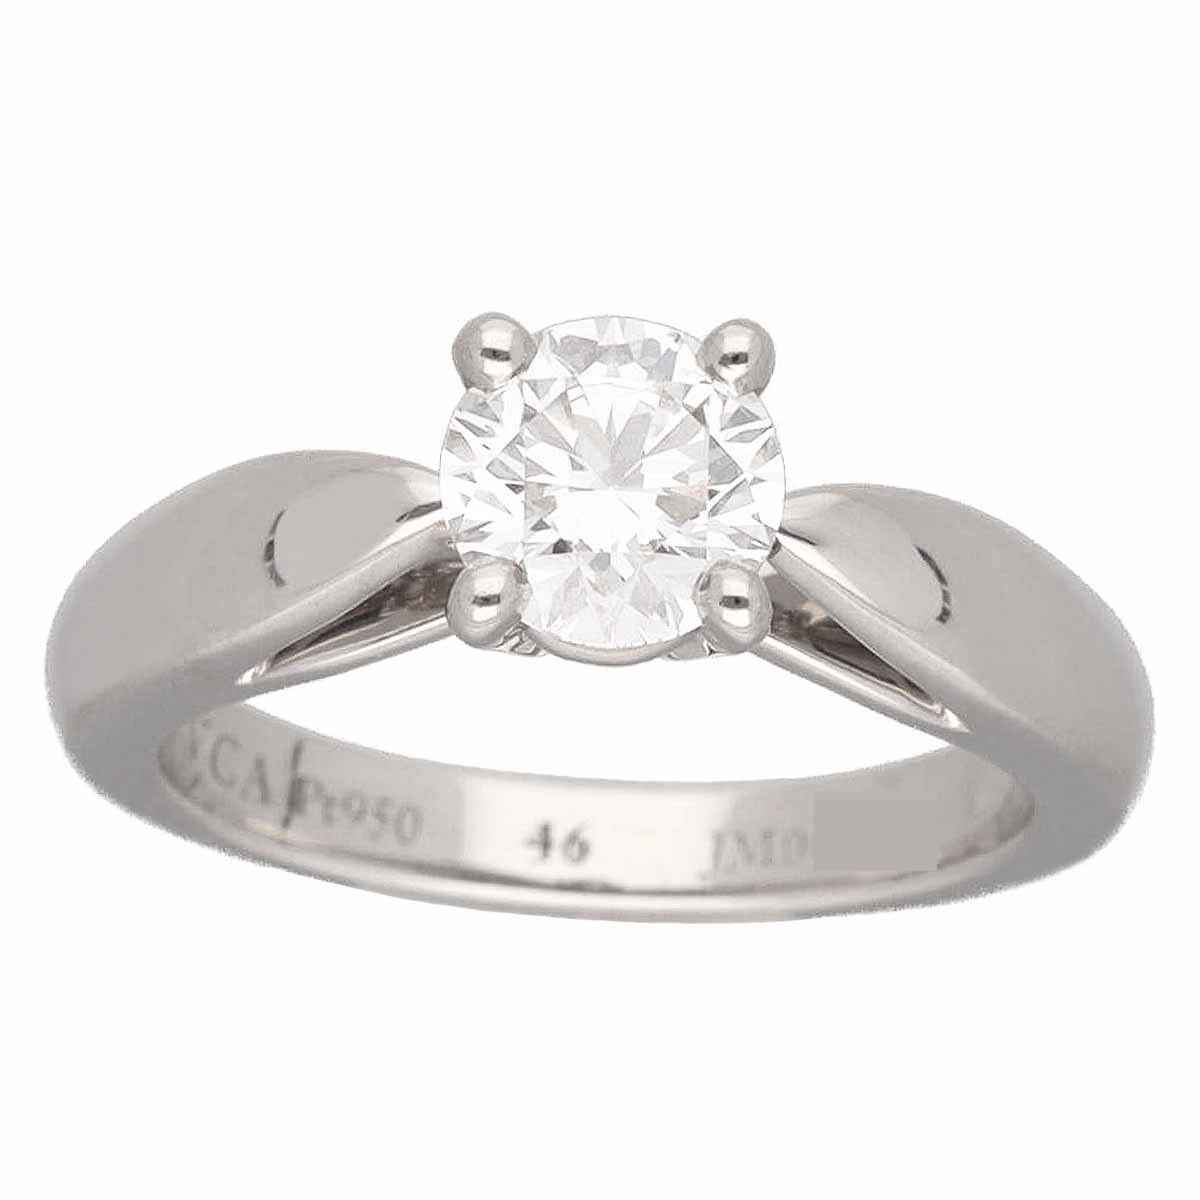 Marke:Van Cleef&Arpels
Name:Bonheur Solitaire Ring
Material:1P Diamant (D0.71ct E-VVS2-3Ex), Pt950 Platin
Gewicht:6.3g（ungefähr)
Ringgröße:Britisch & Australisch:G 1/2  /   US & Kanada:3 3/4 /  Französisch & Russisch:46 /  Deutsch:14.7 /  Japanisch: